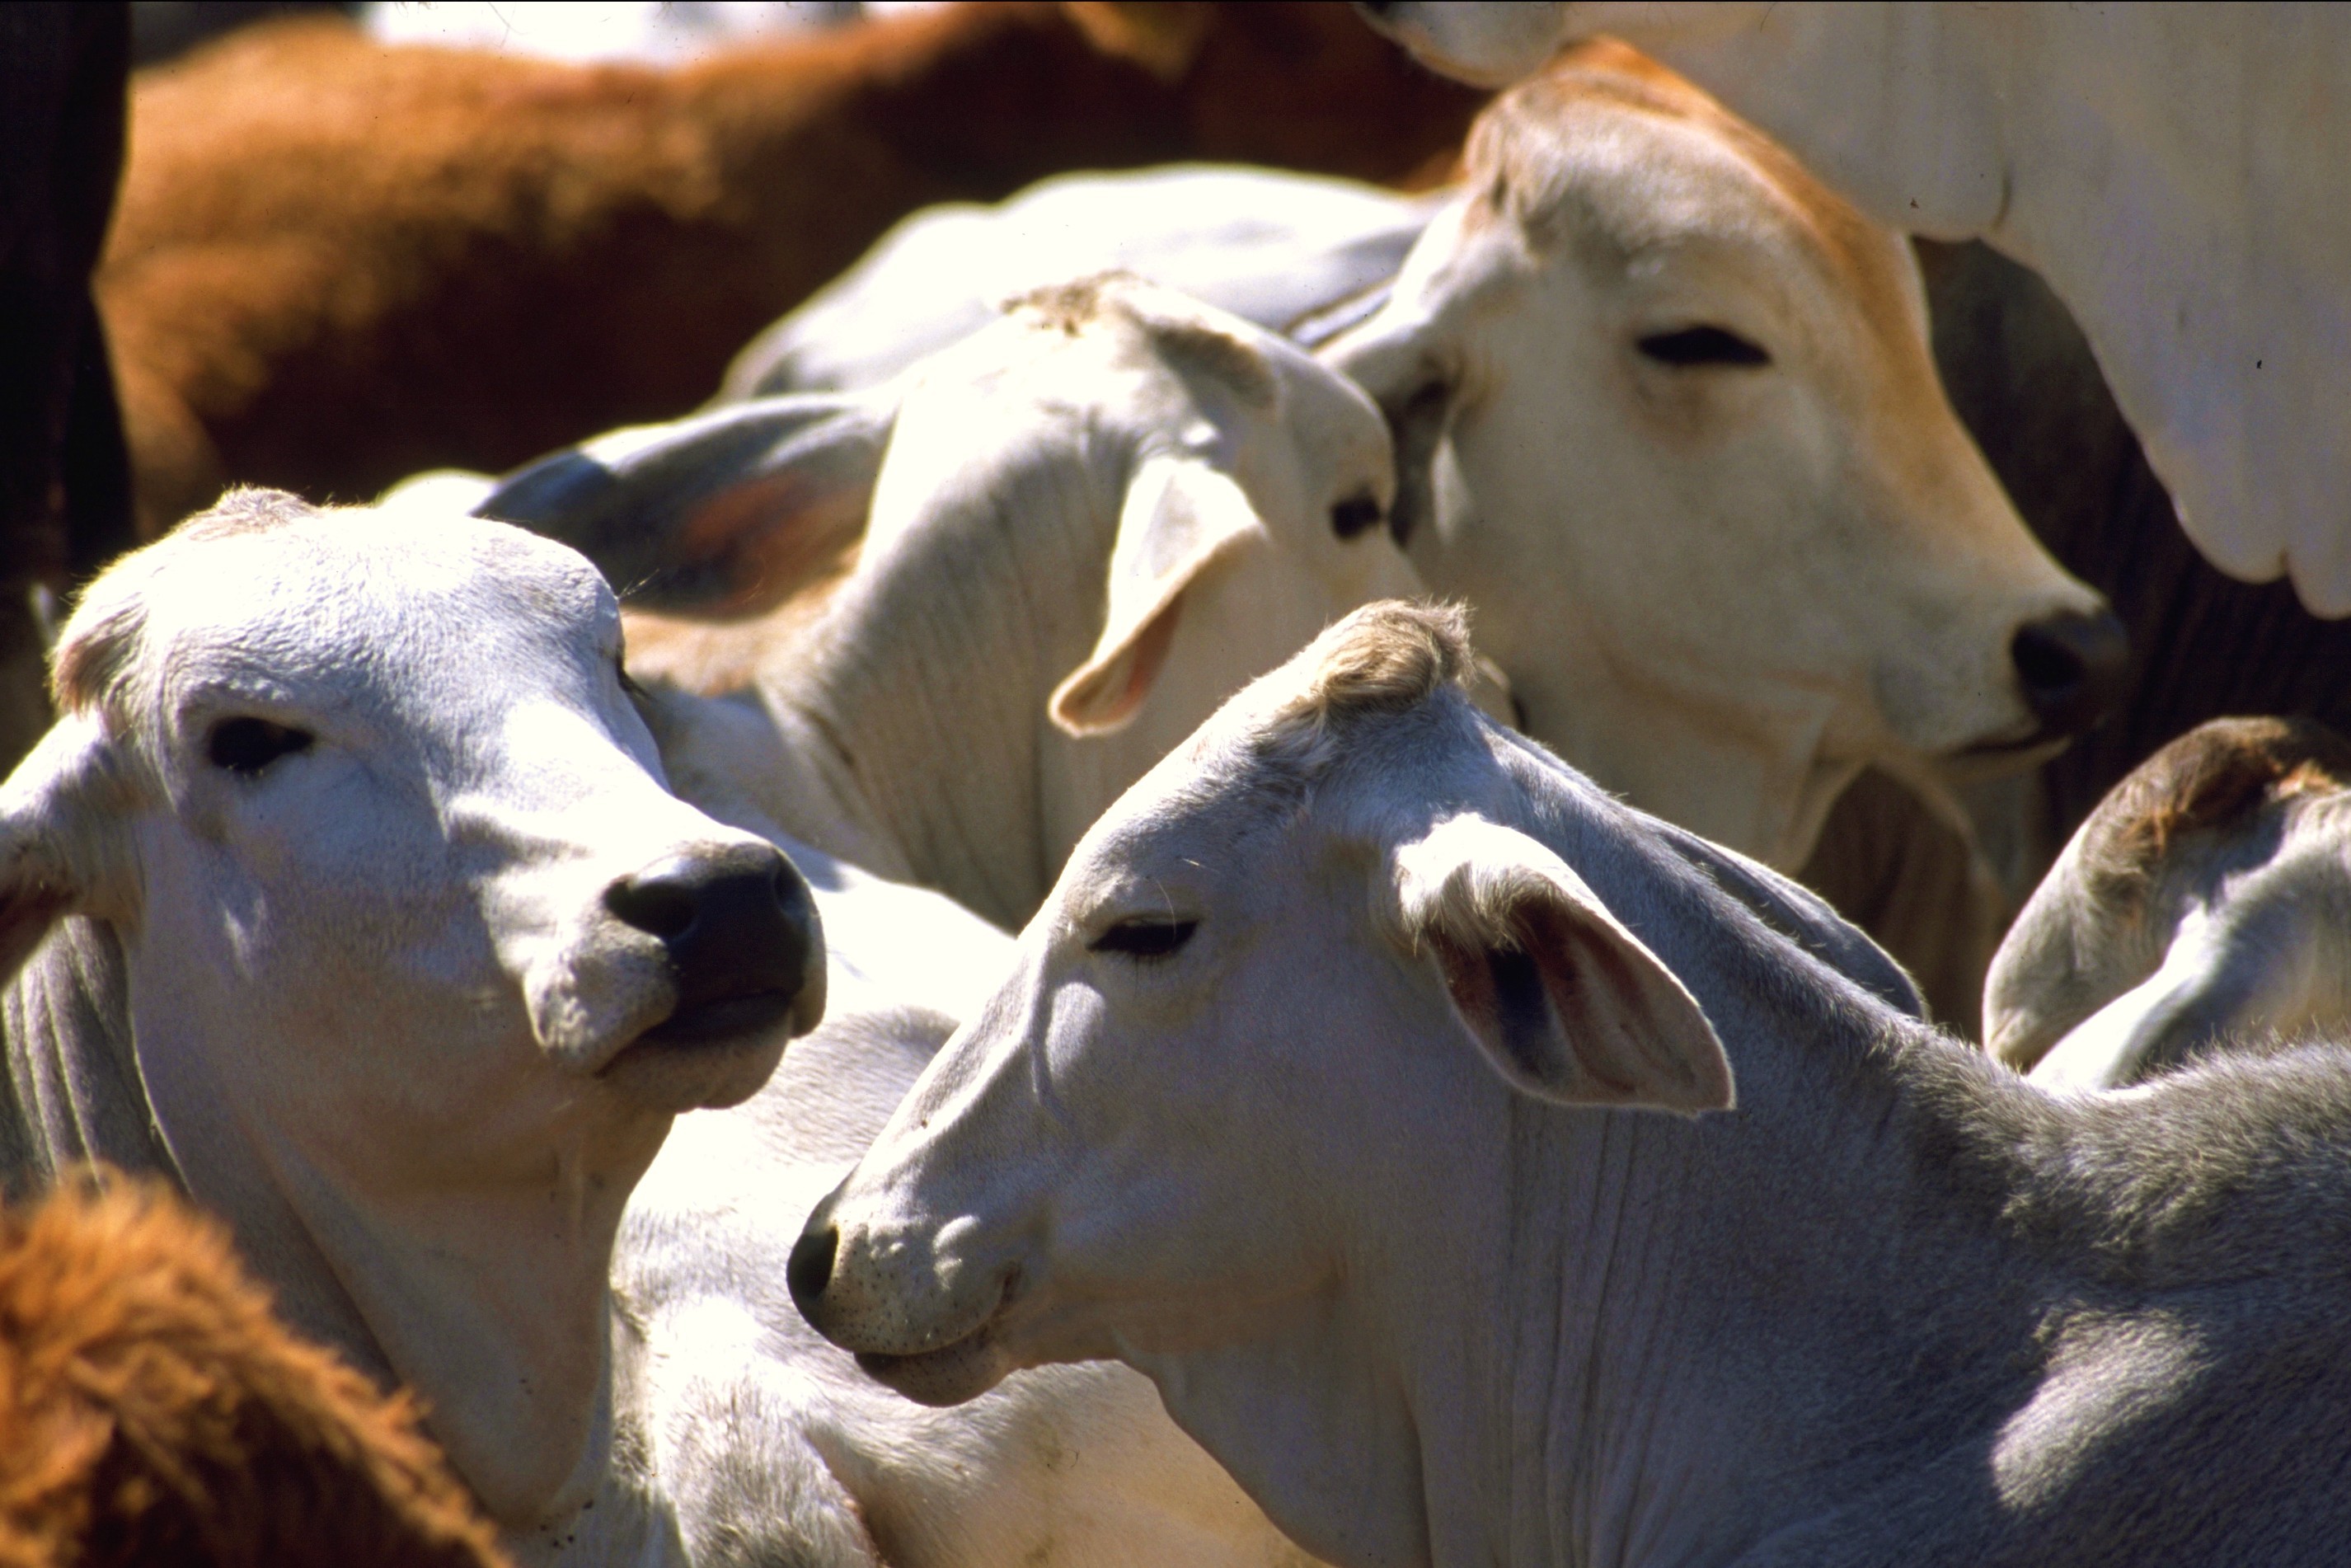 México vende 9 mil hembras de ganado cebú a Cuba